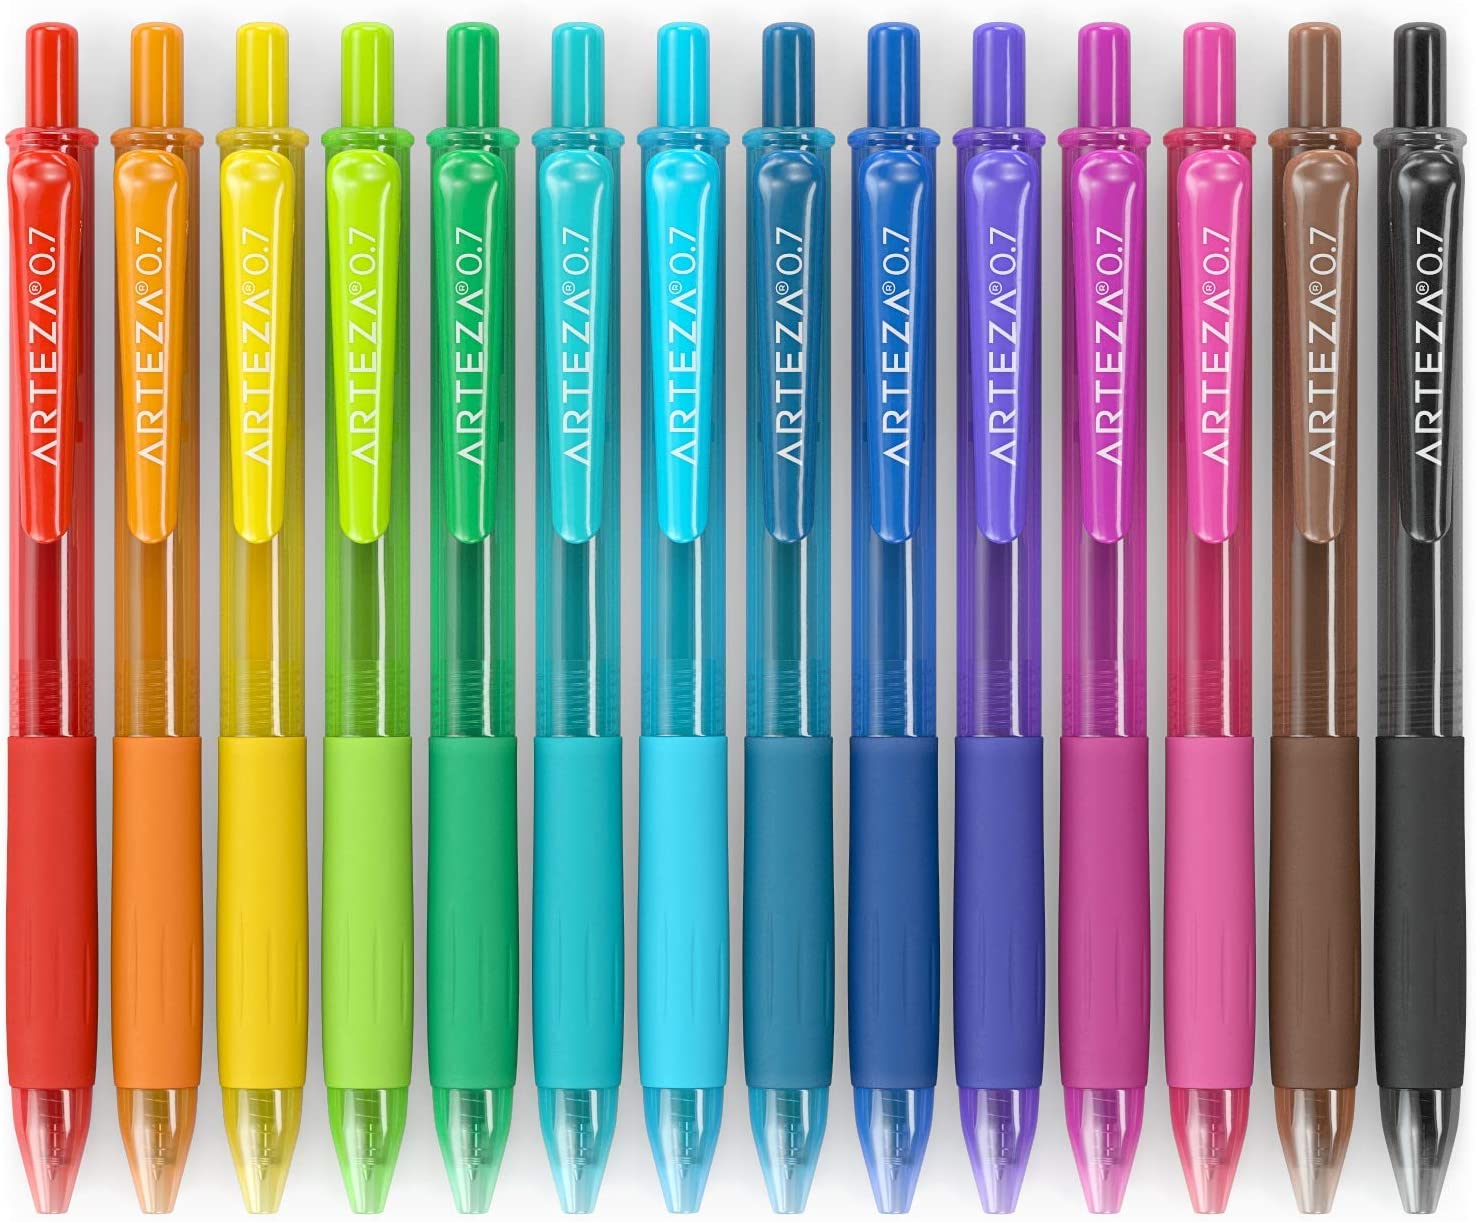 https://arteza.com/cdn/shop/products/retractable-gel-ink-pens-bright-colors-set-of-14_QAjqXKEq.jpg?v=1701087524&width=1946